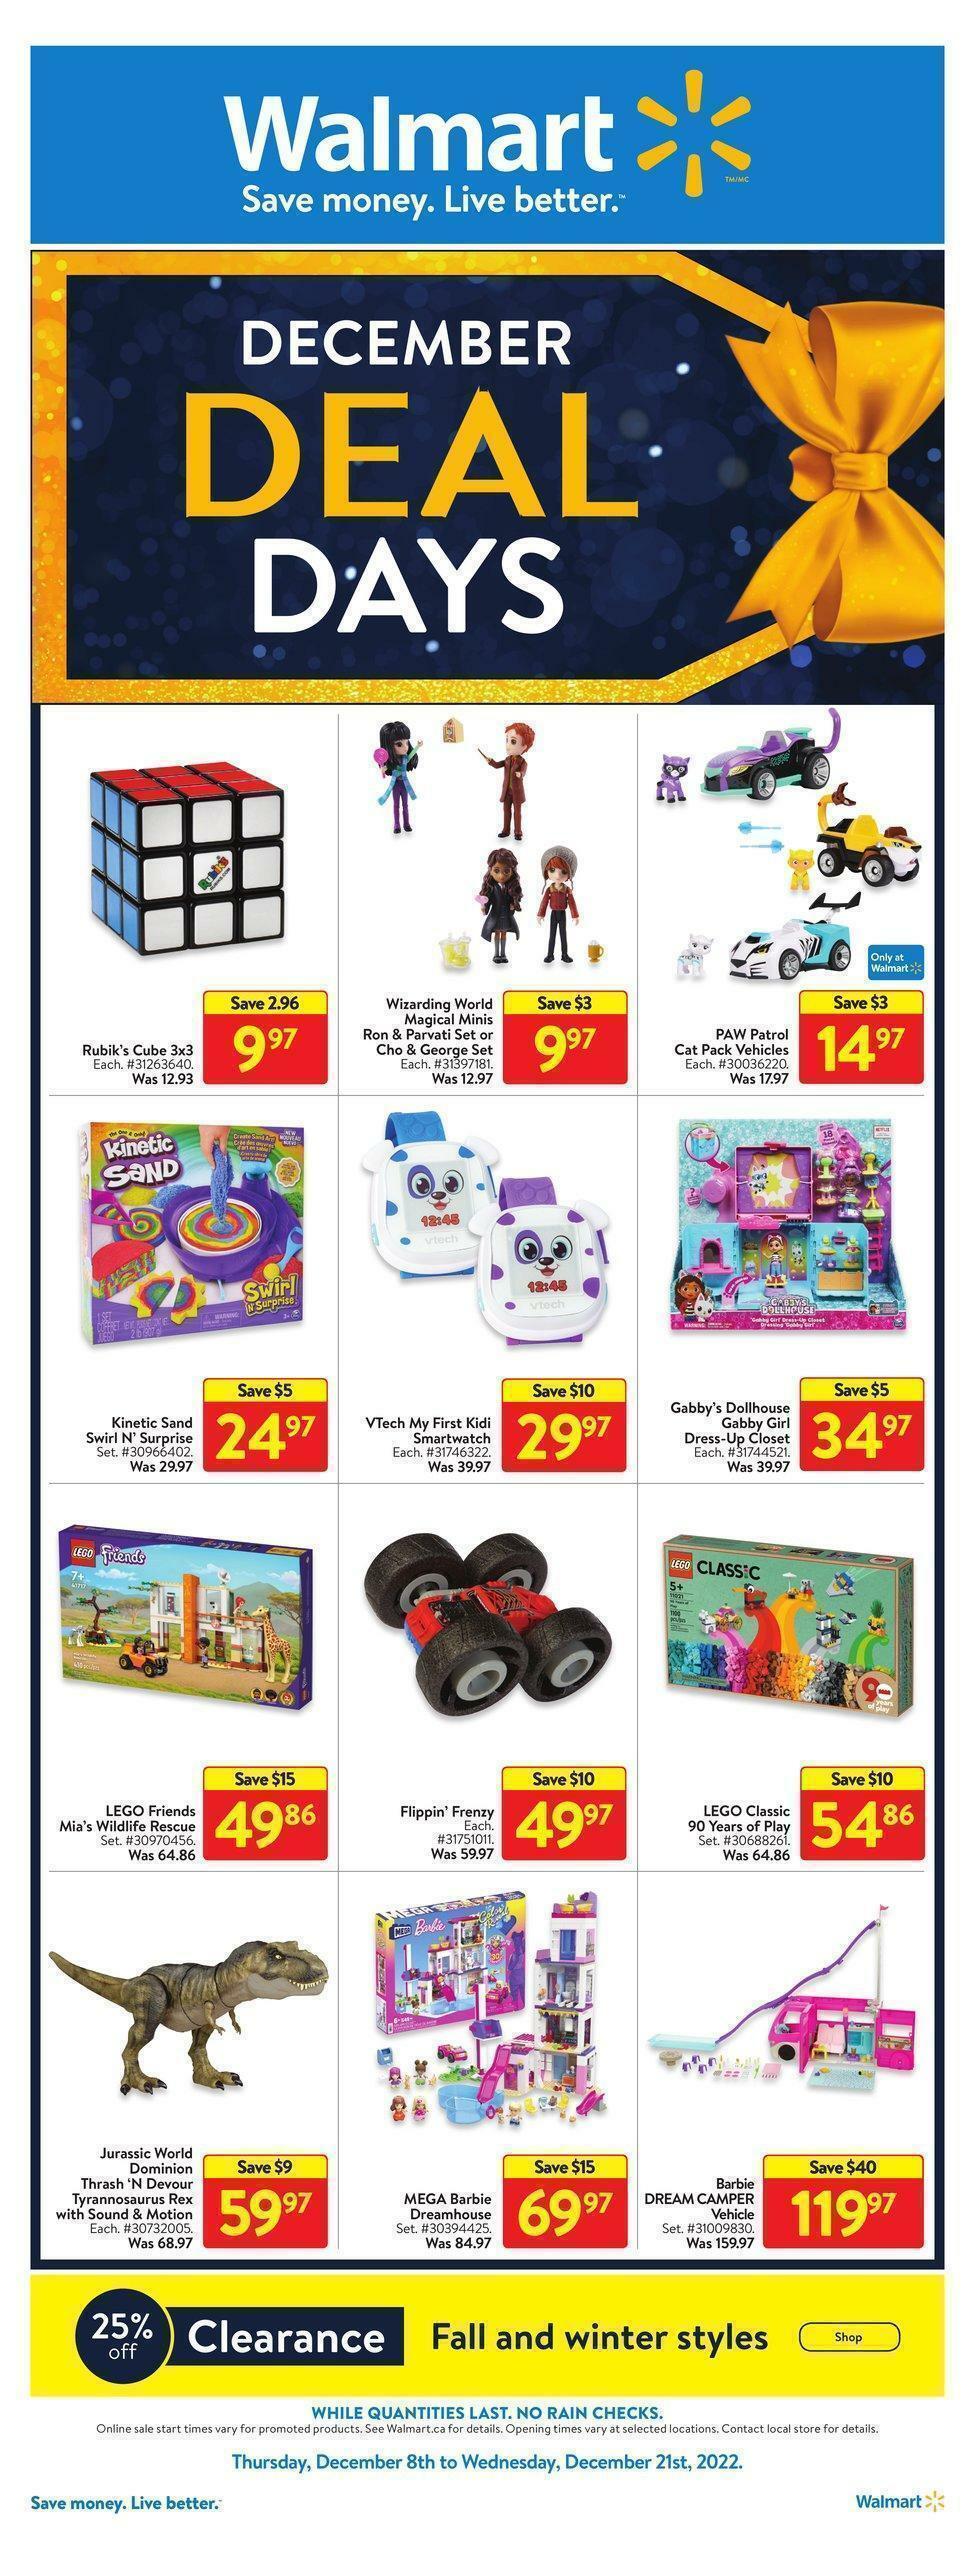 Walmart December Deal Days Flyer from December 8